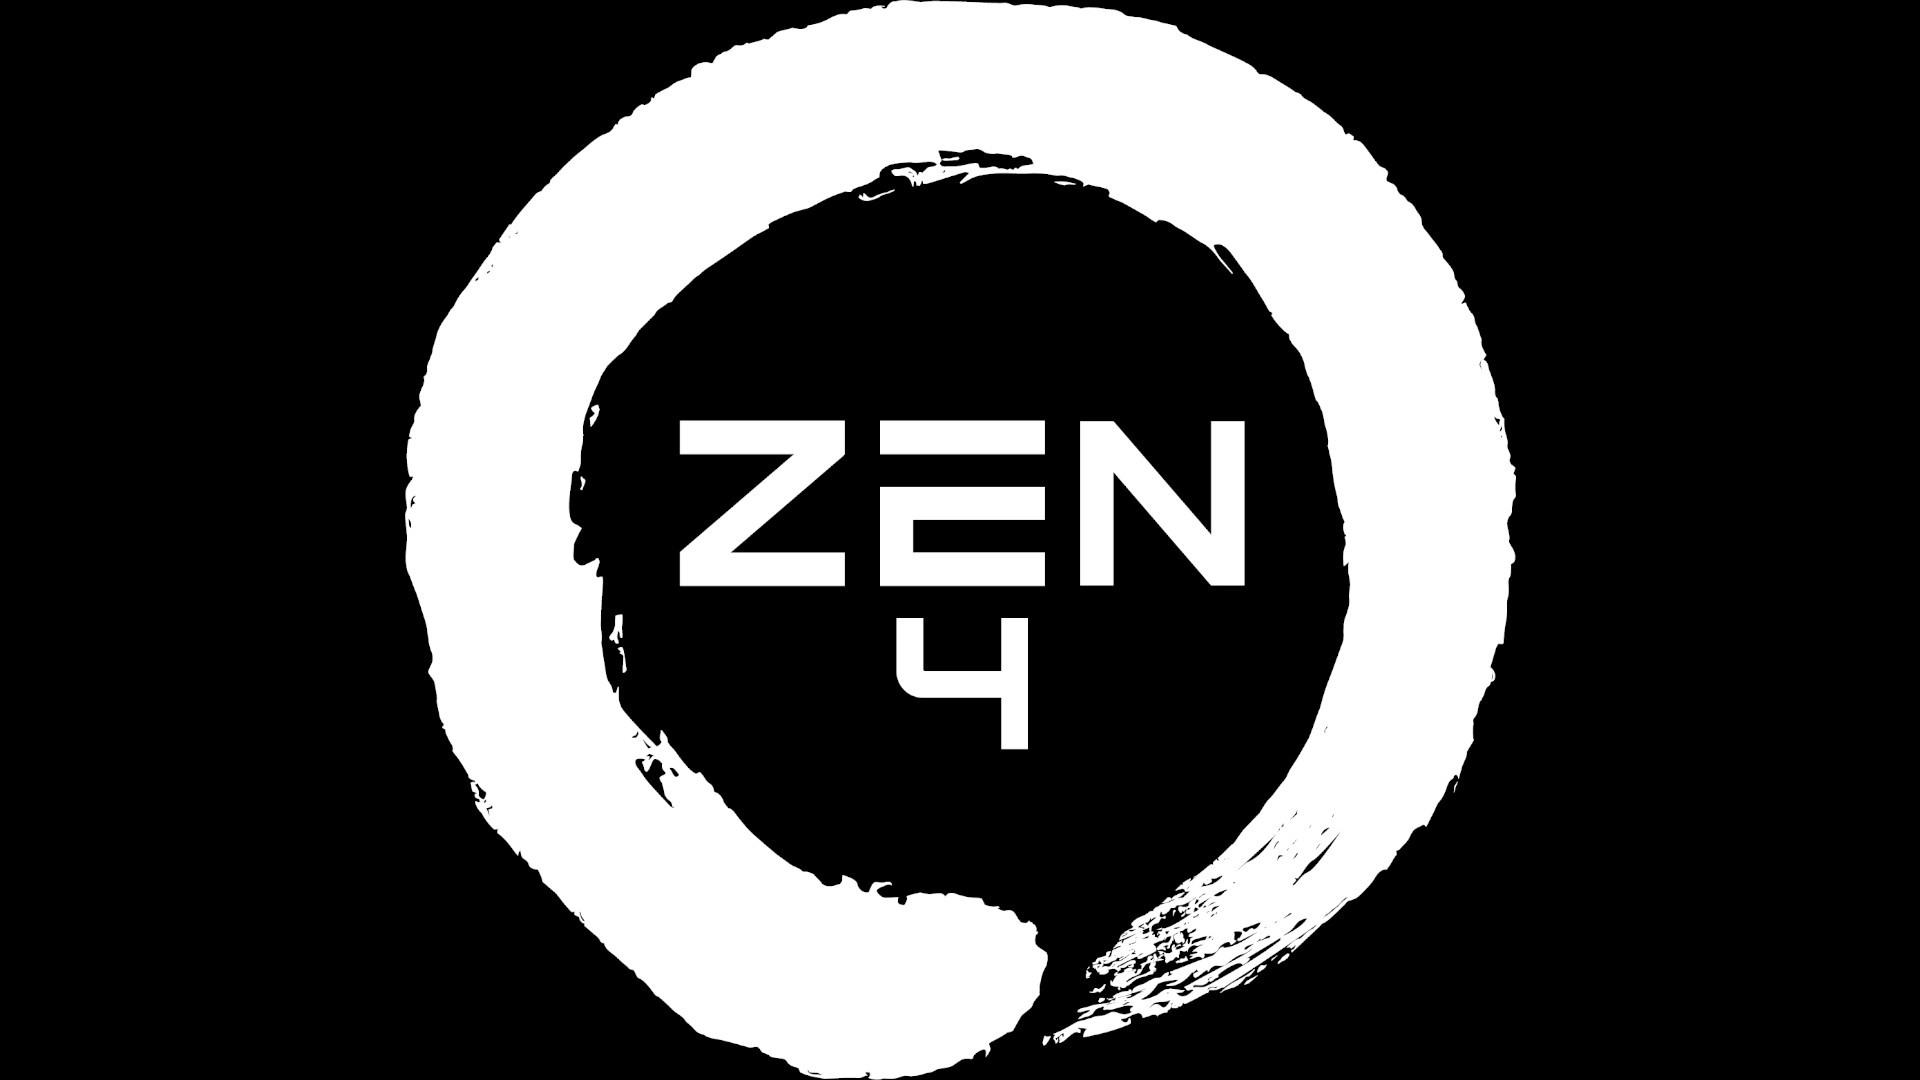 The official AMD Zen 4 logo